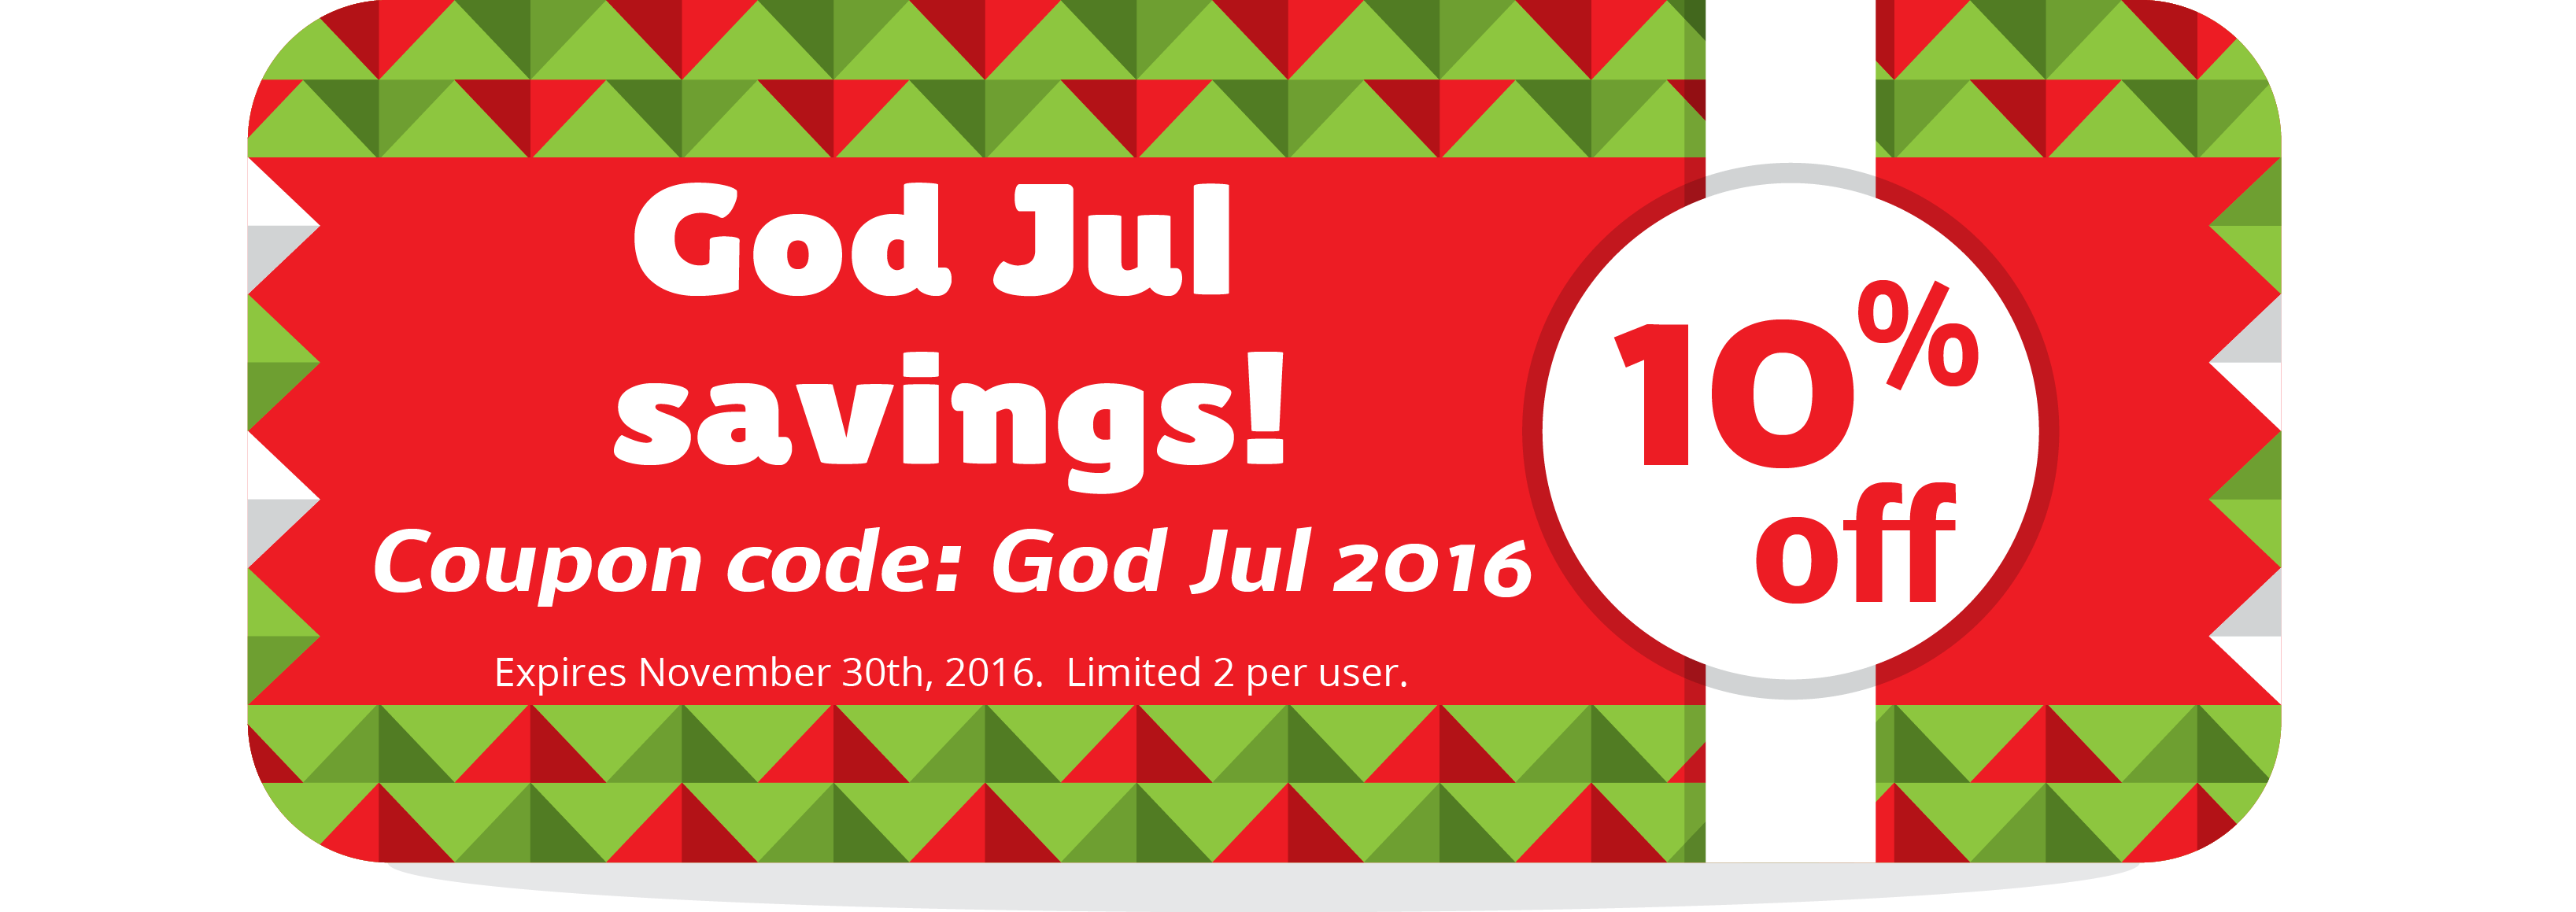 God jul coupon 2016